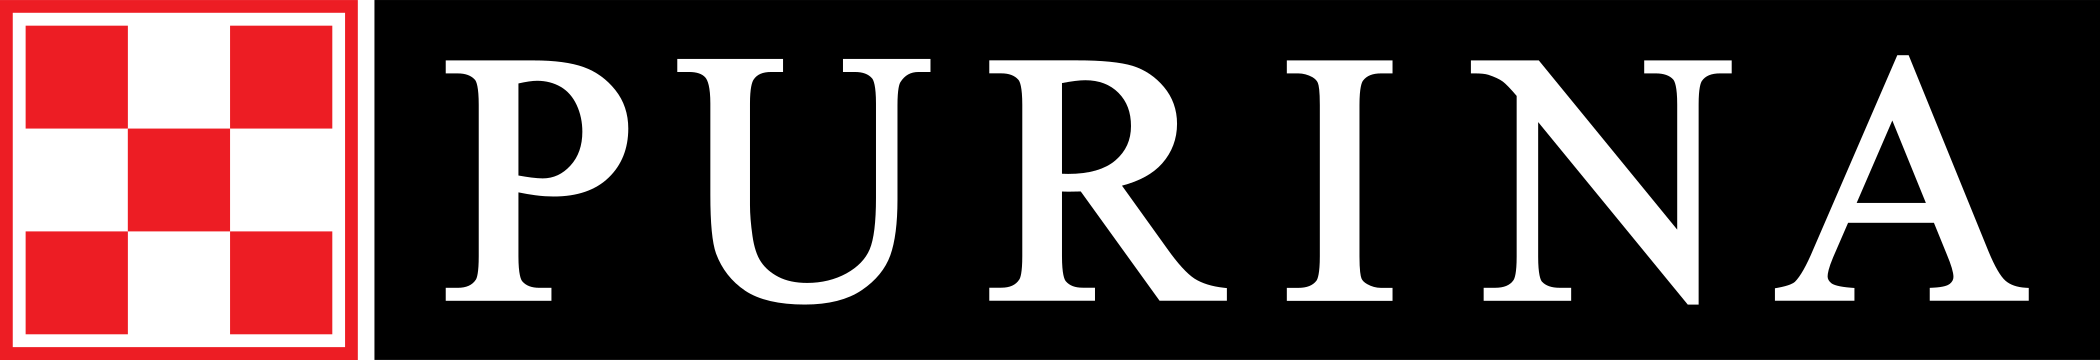 Purina Logo.